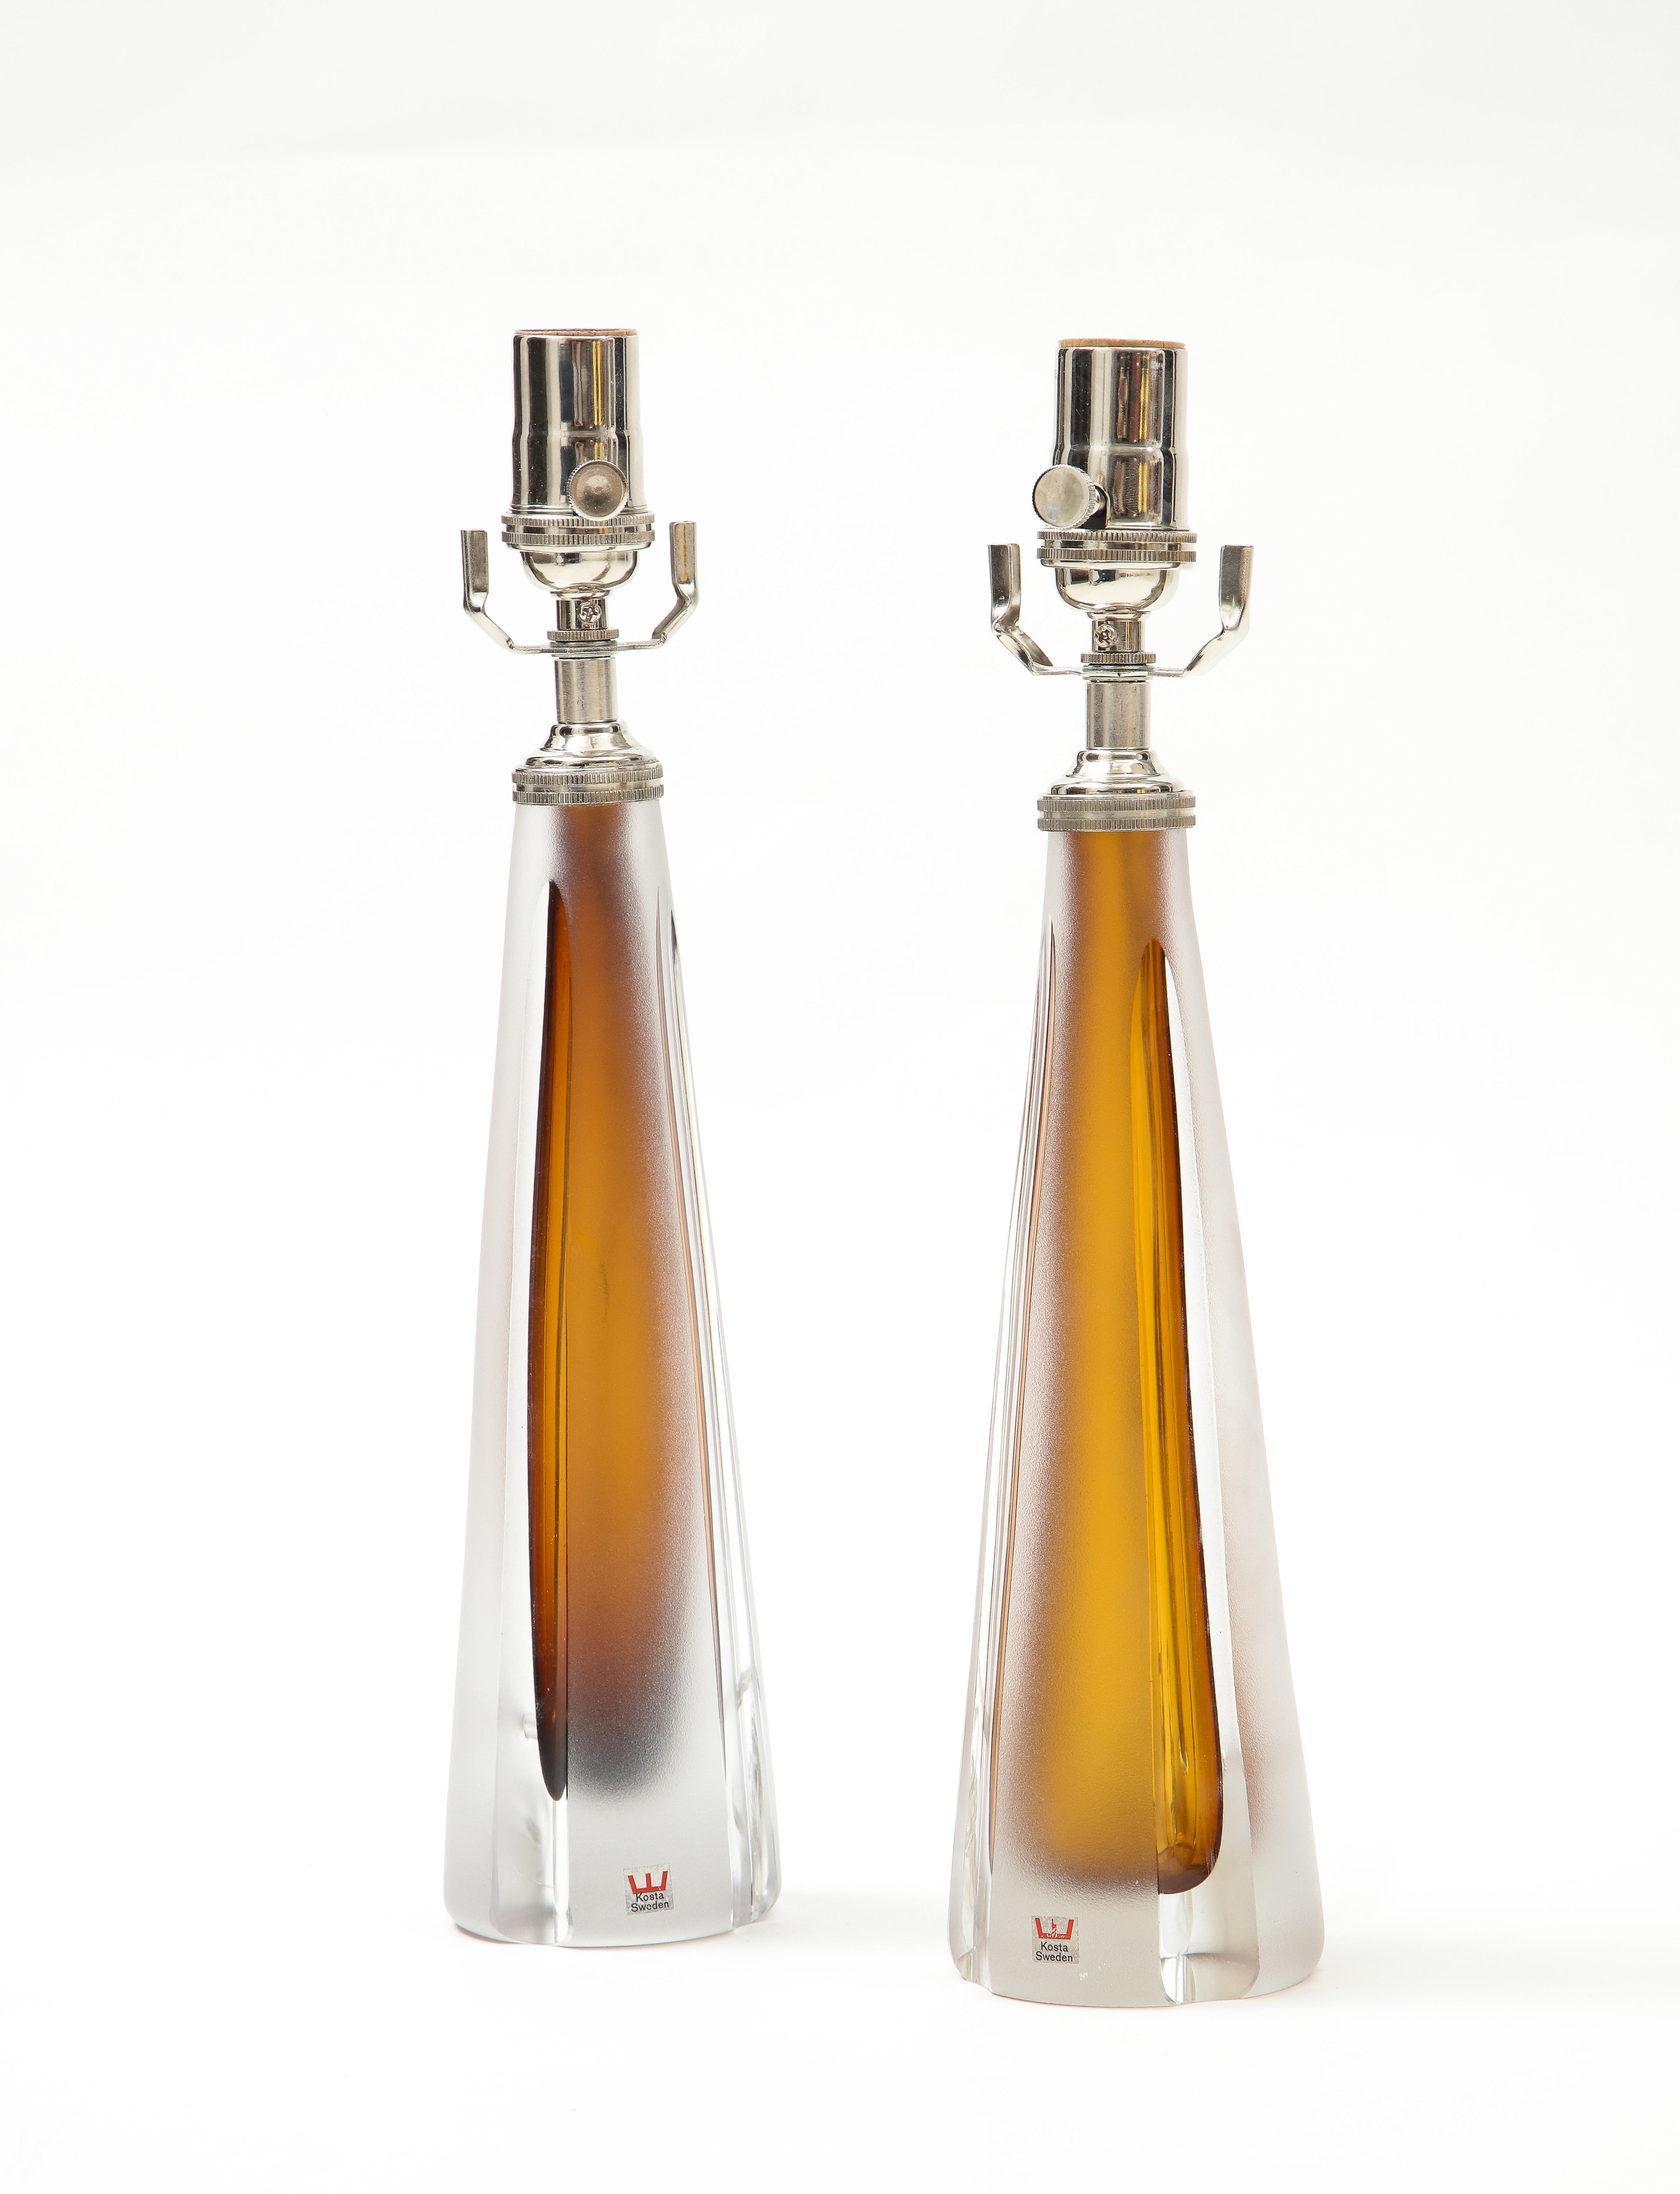 Magnifique paire de lampes en forme de flacon de parfum en verre dépoli Cognac 
est associé à un verre lisse et transparent.
les lampes ont été nouvellement recâblées pour les États-Unis avec des raccords chromés polis et elles prennent une